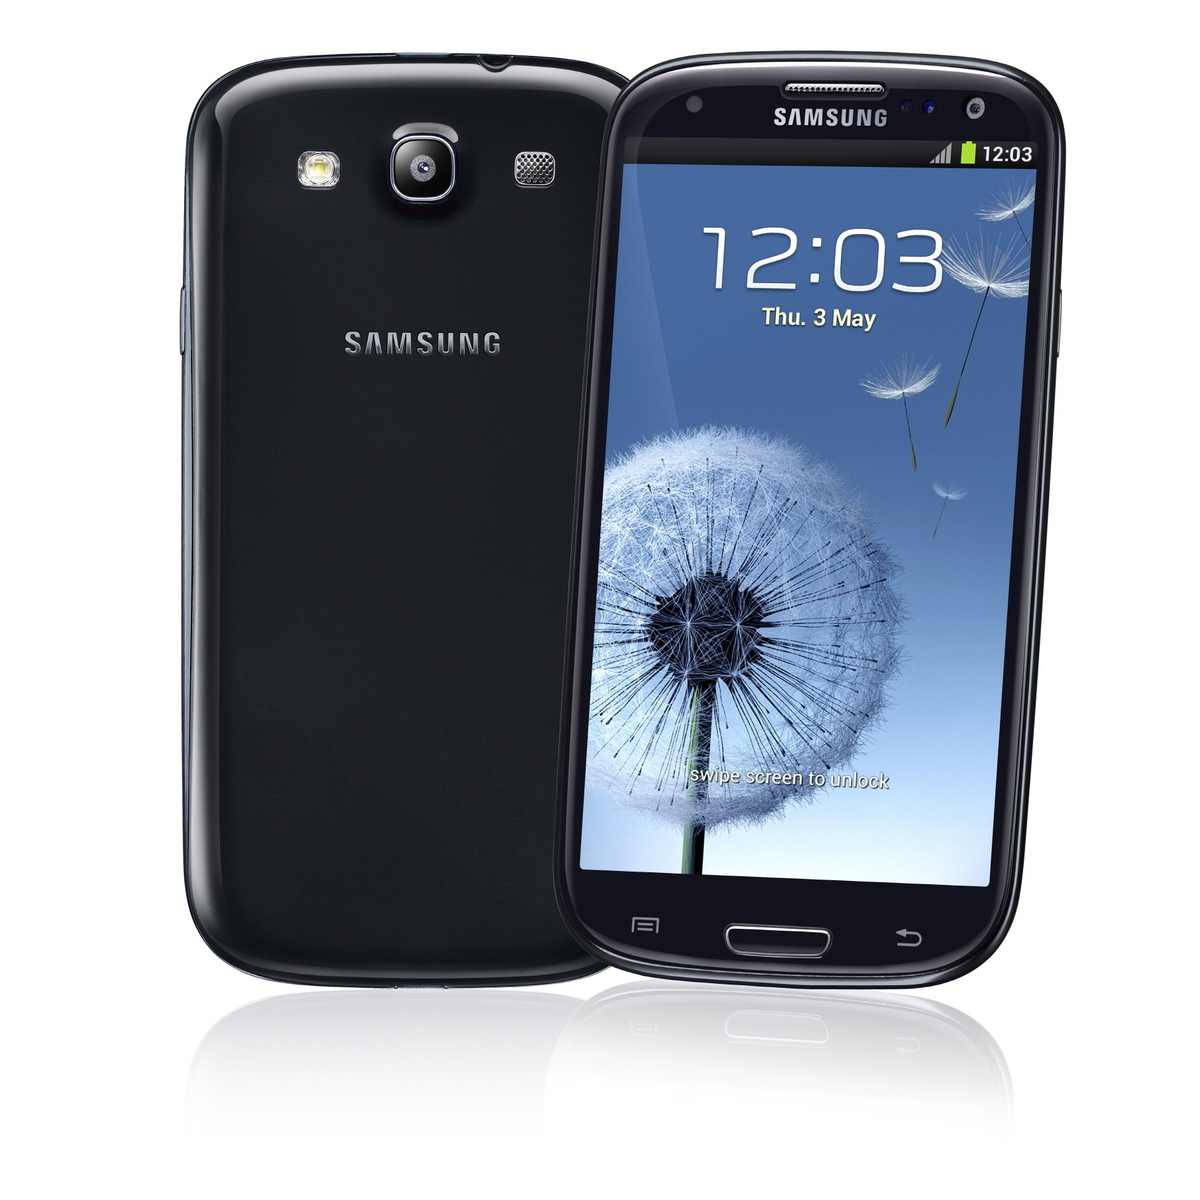 三星Galaxy S3 i9300 32G版3G手机(云石白)WCDMA/GSM国行粉色图片6素材-IT168手机图片大全